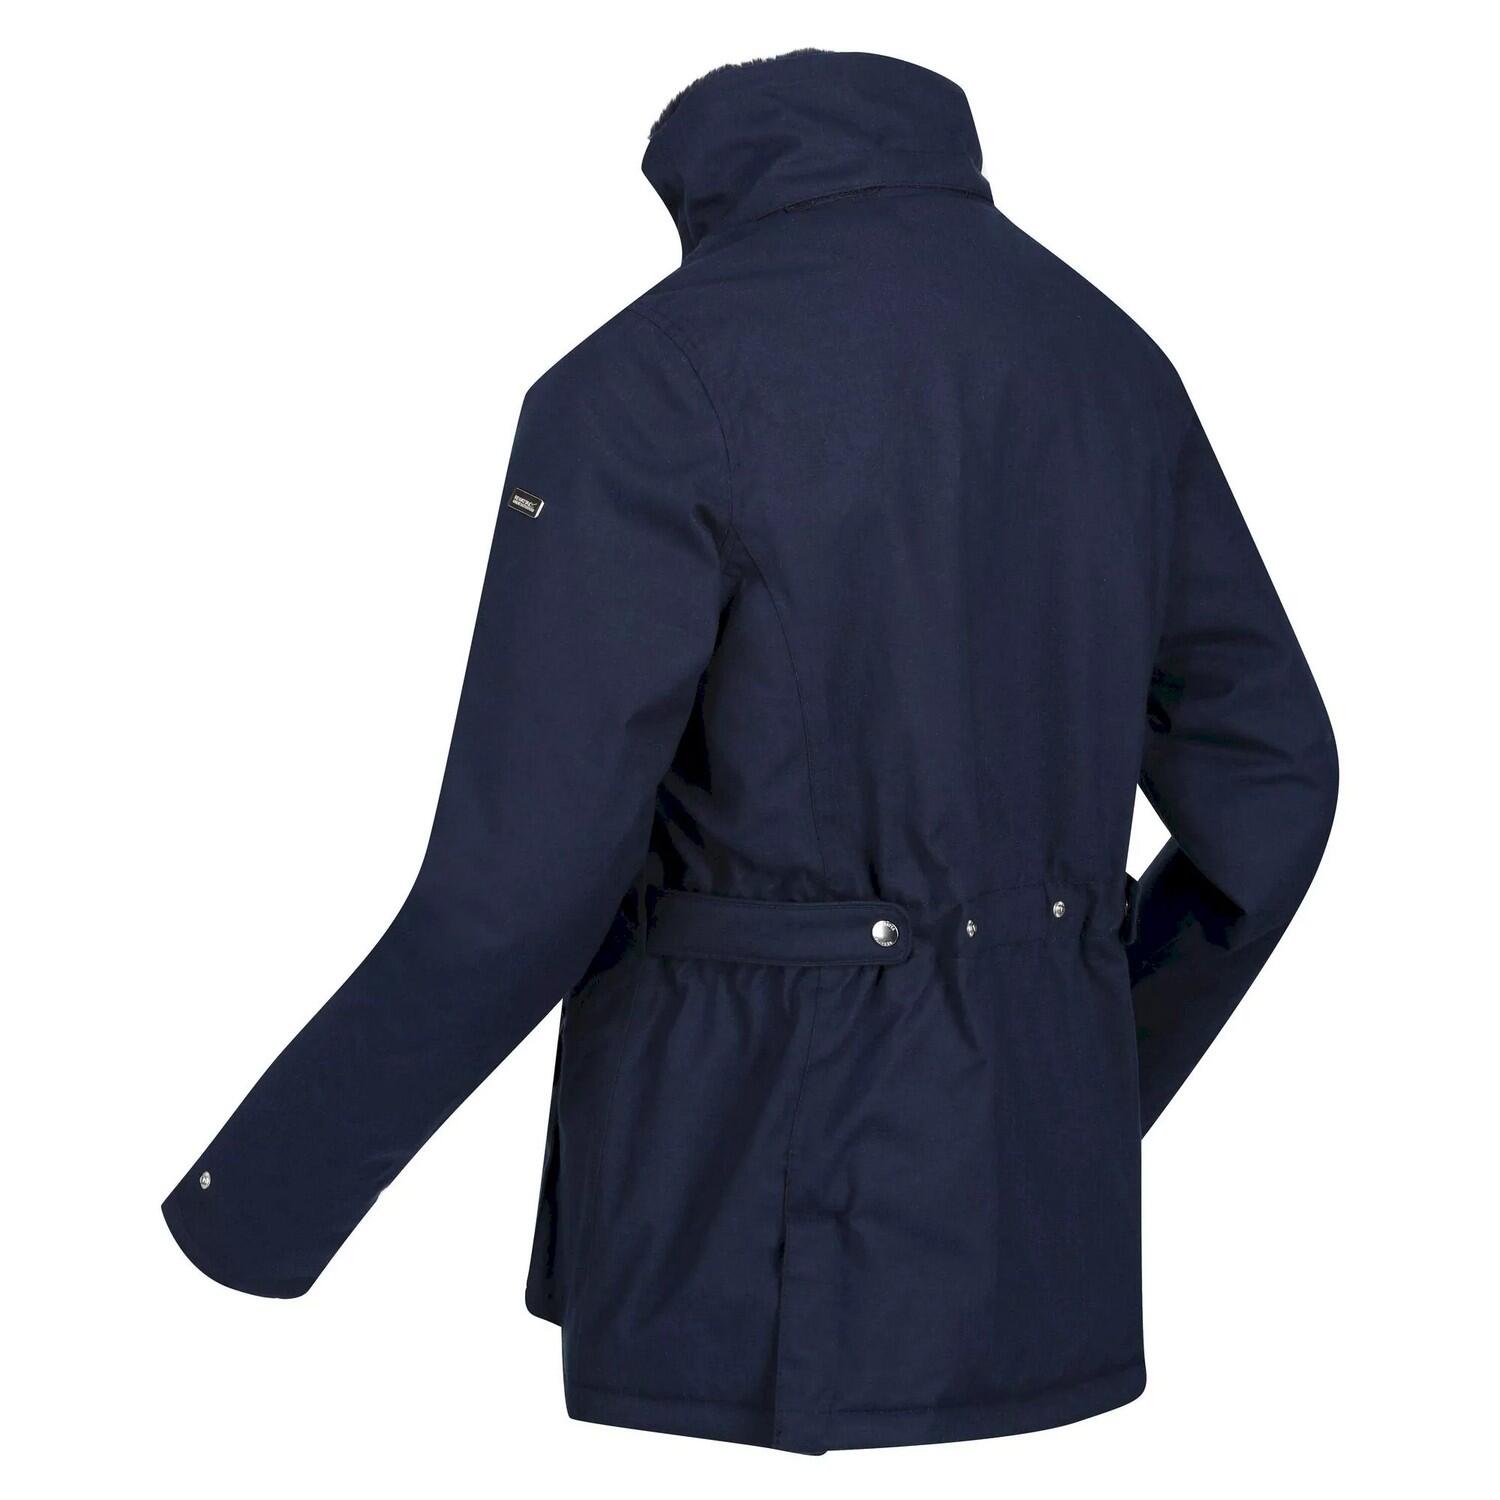 Womens/Ladies Leighton Waterproof Jacket (Navy) 4/5